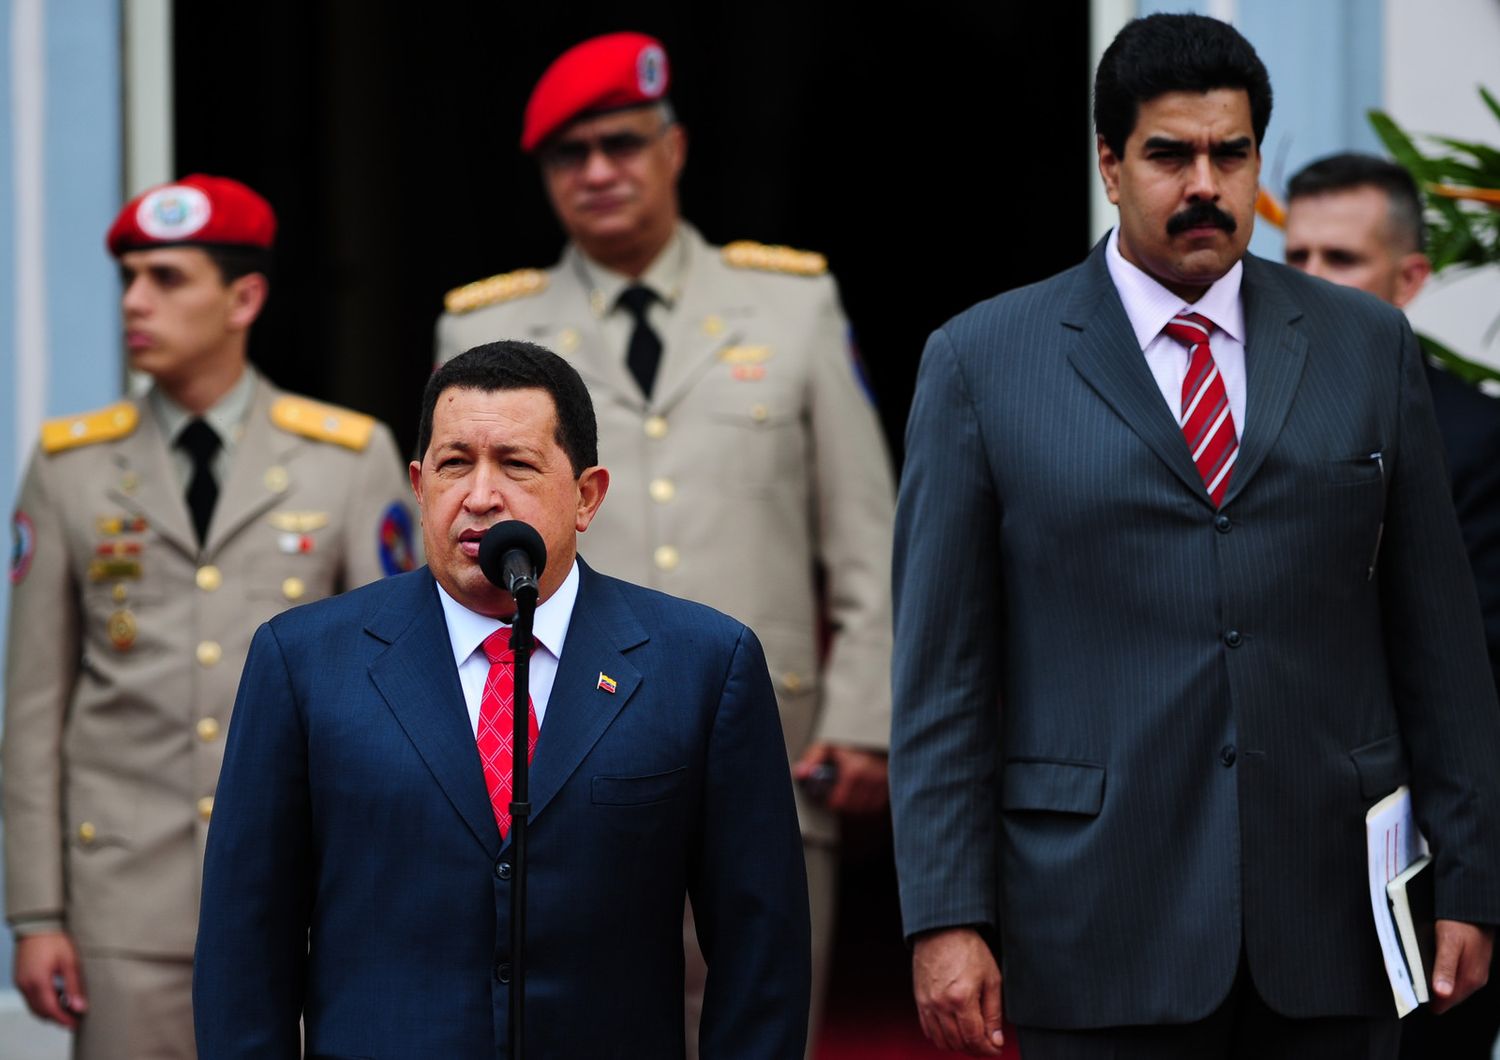 Hugo Chavez con Nicolas Maduro, allora ministro degli Esteri, a una cerimonia nel 2010 a Caracas